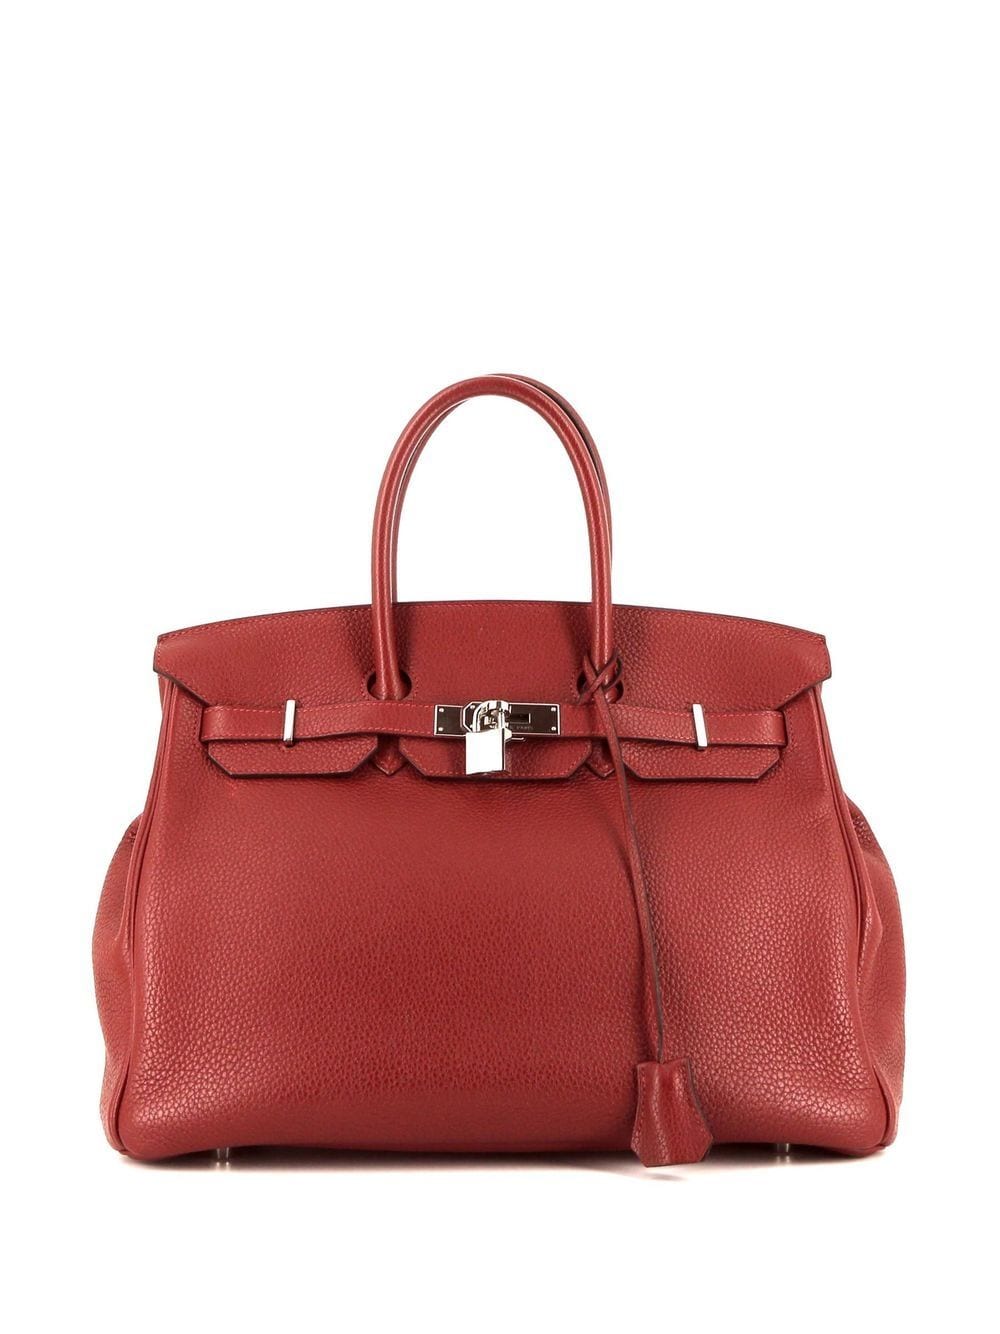 Hermès Pre-Owned Birkin 35 Handtasche - Rot von Hermès Pre-Owned